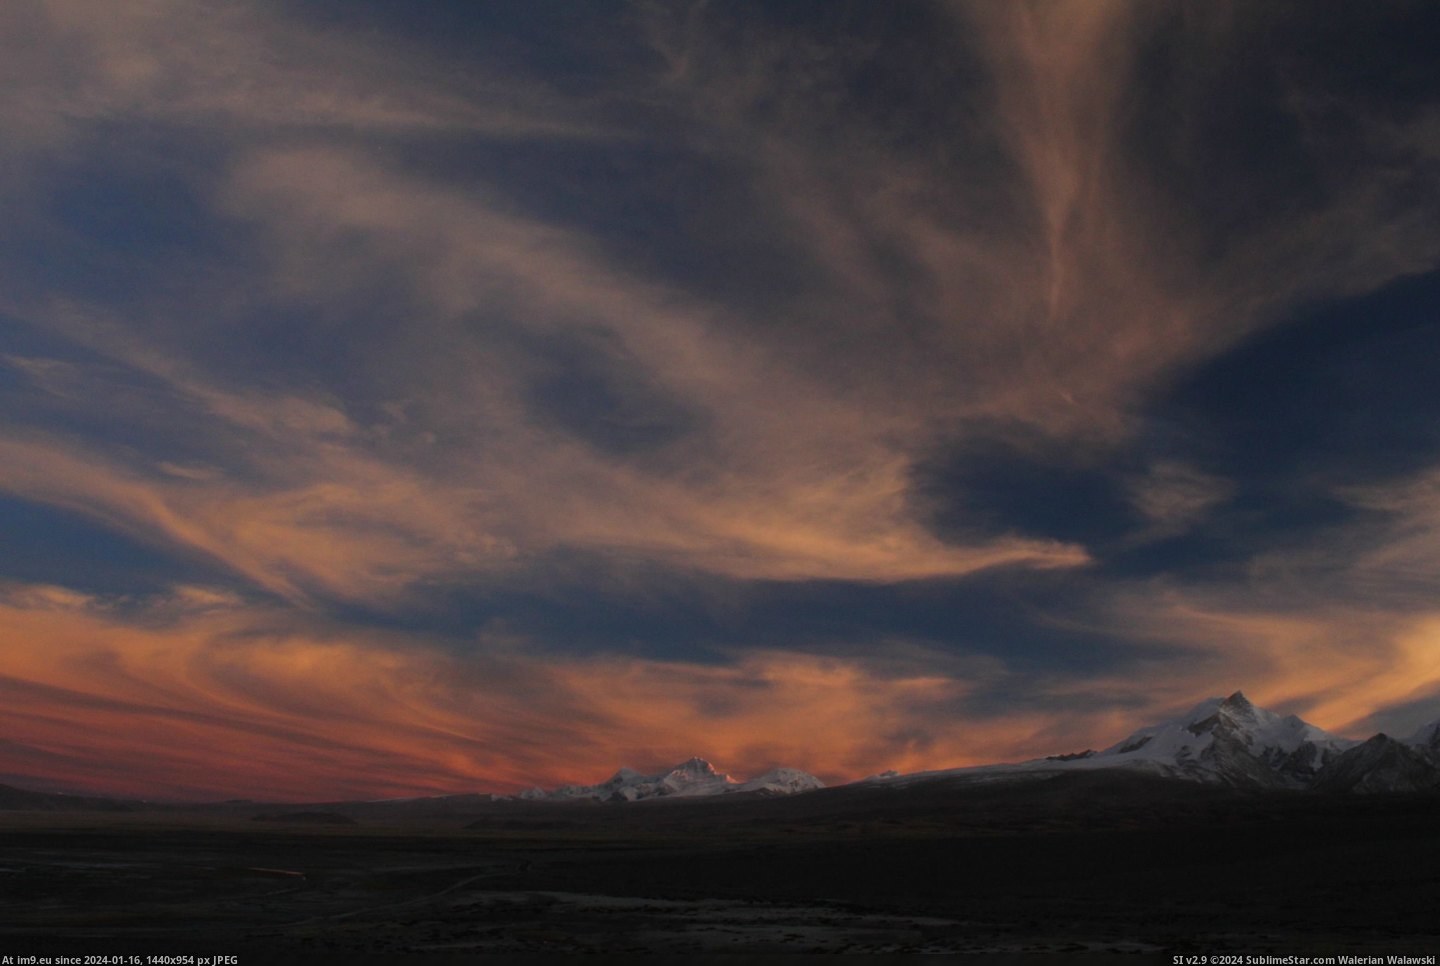 #Sunset #Clouds #3456x2304 #Himalayas #Tibet #Shaped #Phoenix [Earthporn] Sunset and phoenix shaped clouds over the Himalayas, Tibet[3456x2304] Pic. (Изображение из альбом My r/EARTHPORN favs))